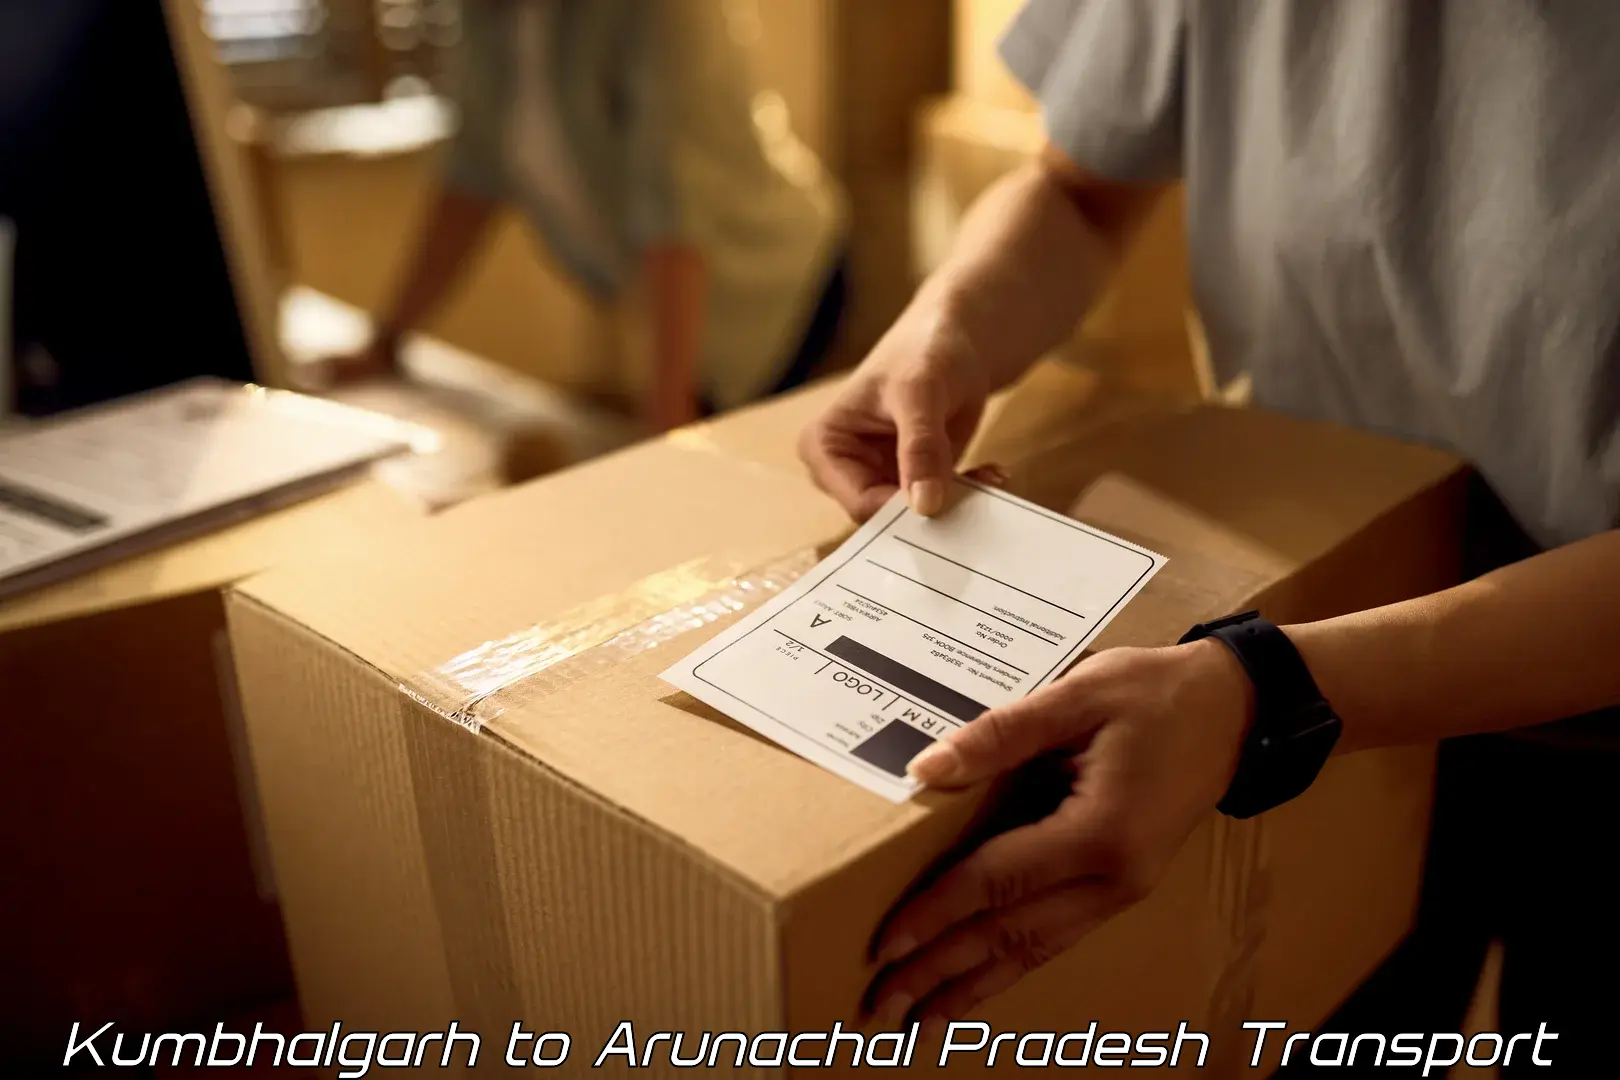 Nearest transport service Kumbhalgarh to Arunachal Pradesh